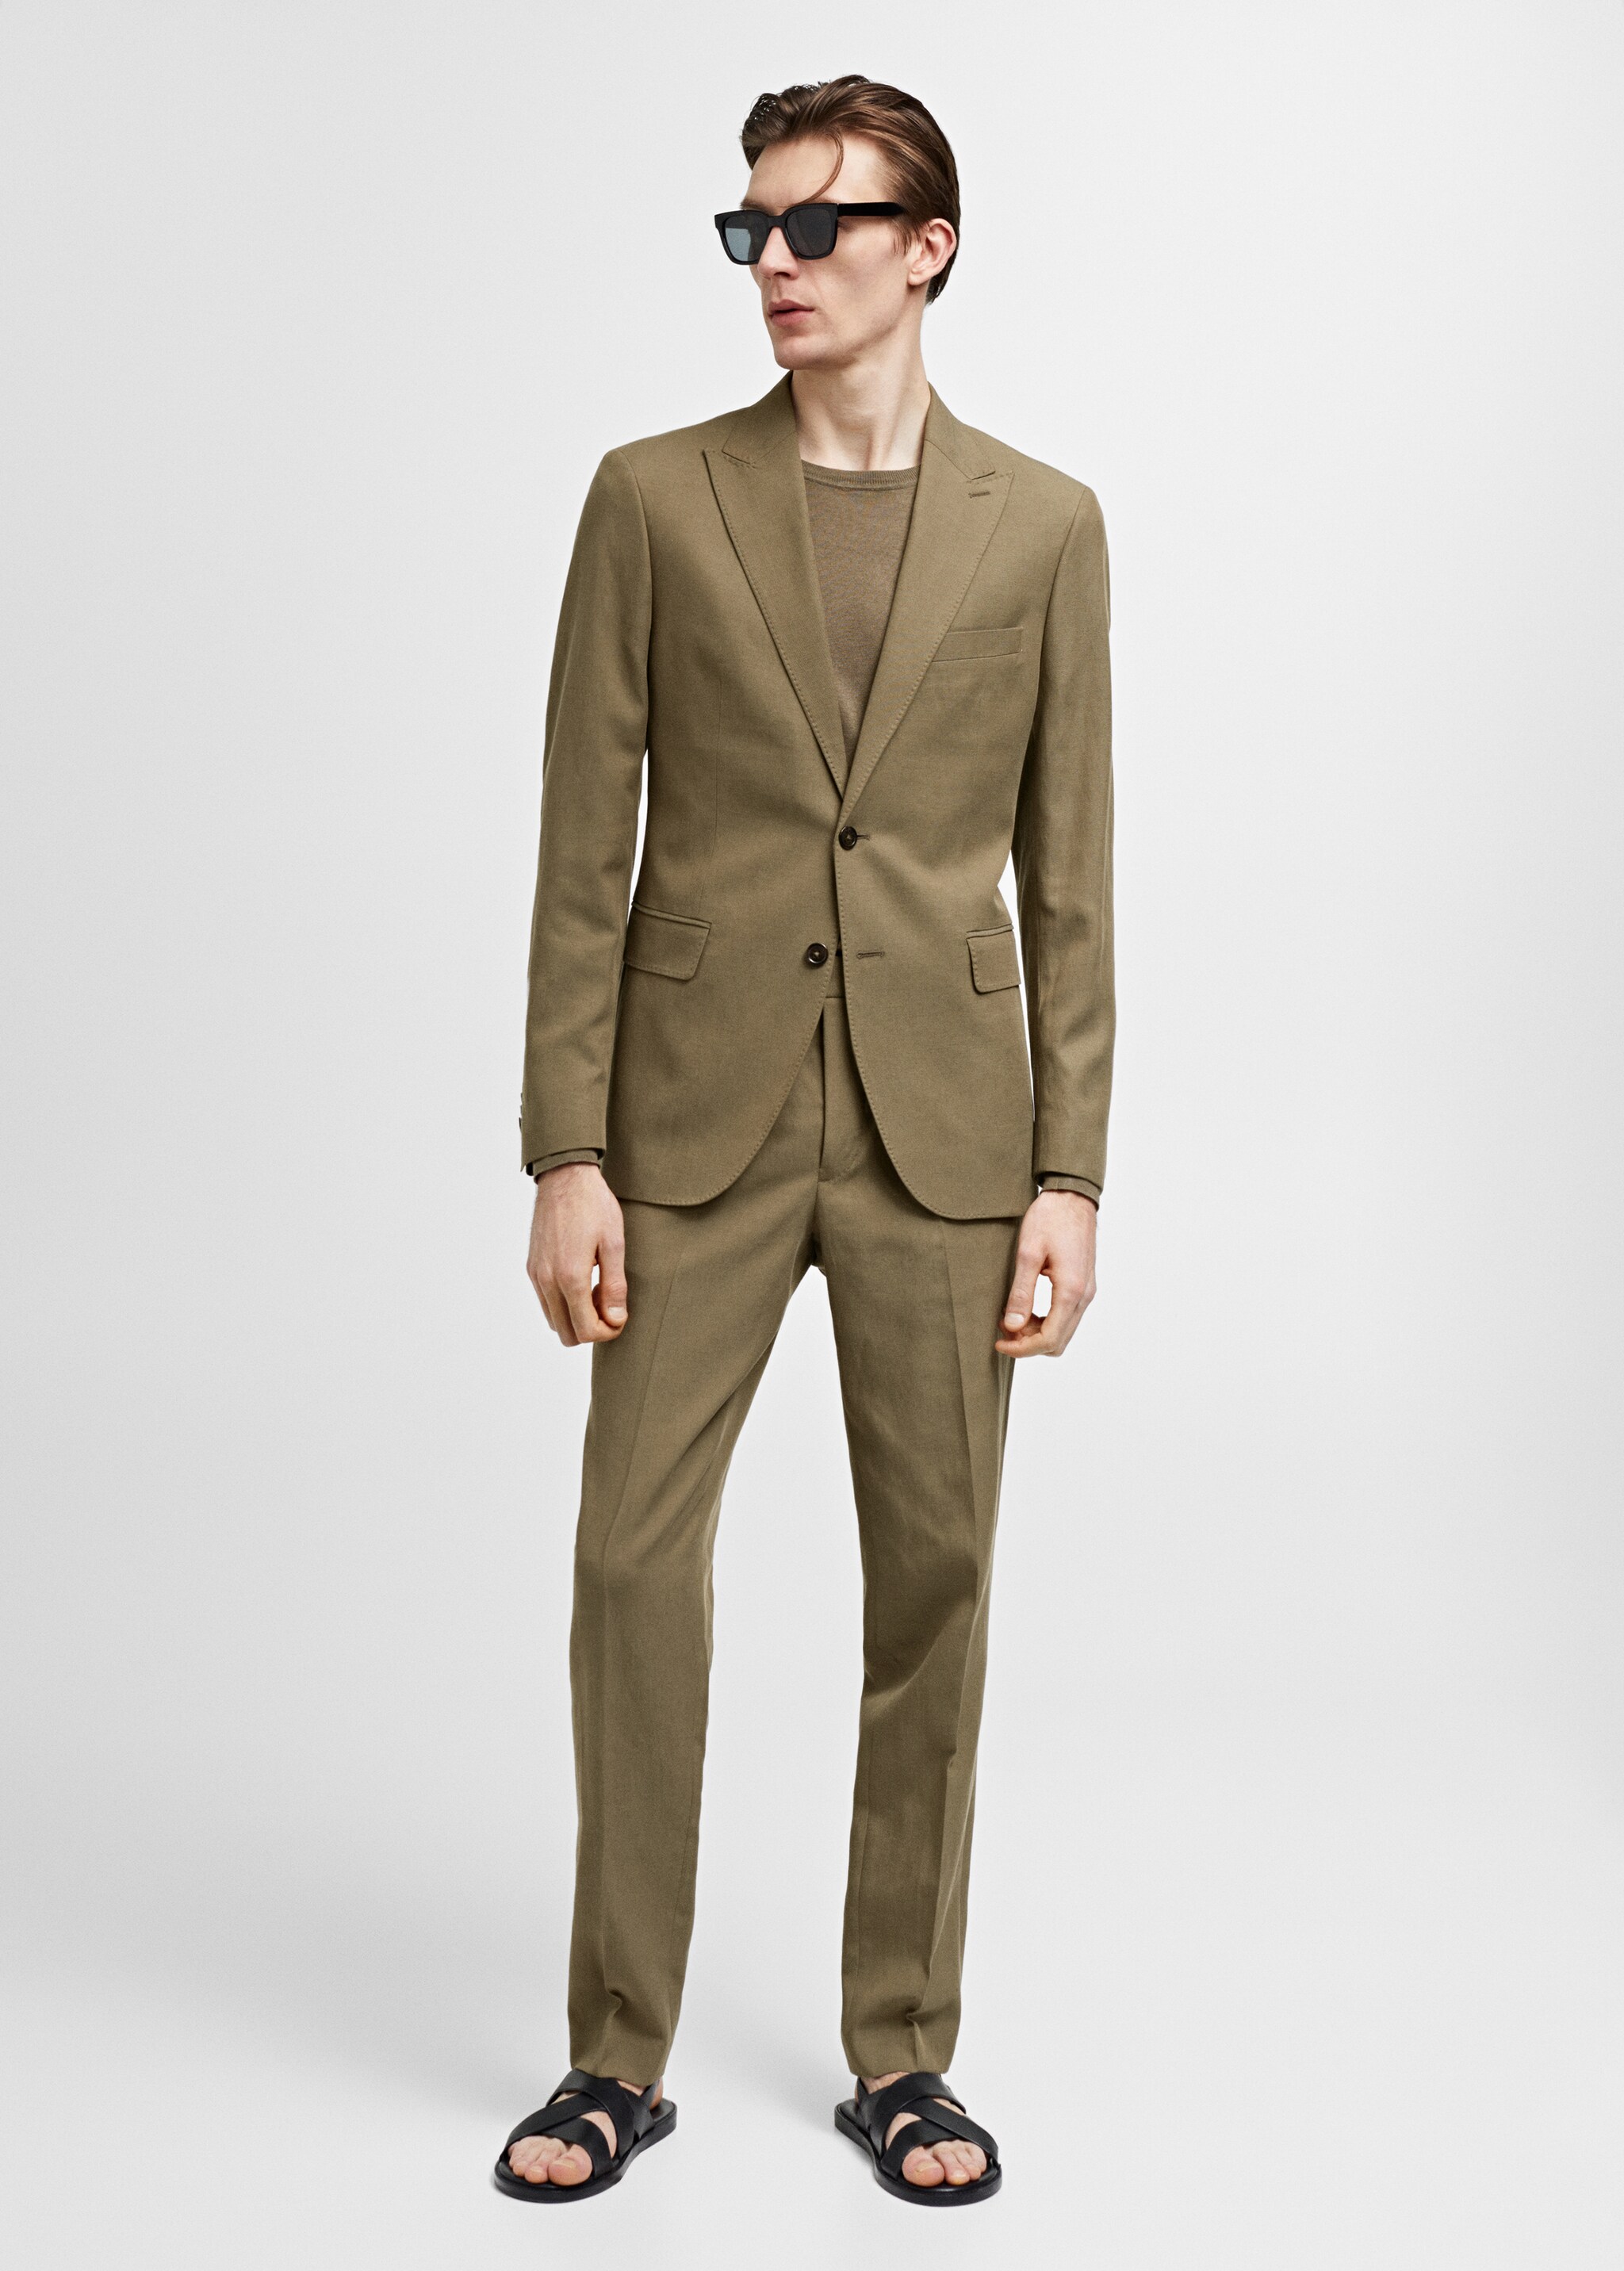 Slim fit linen and cotton suit jacket - General plane